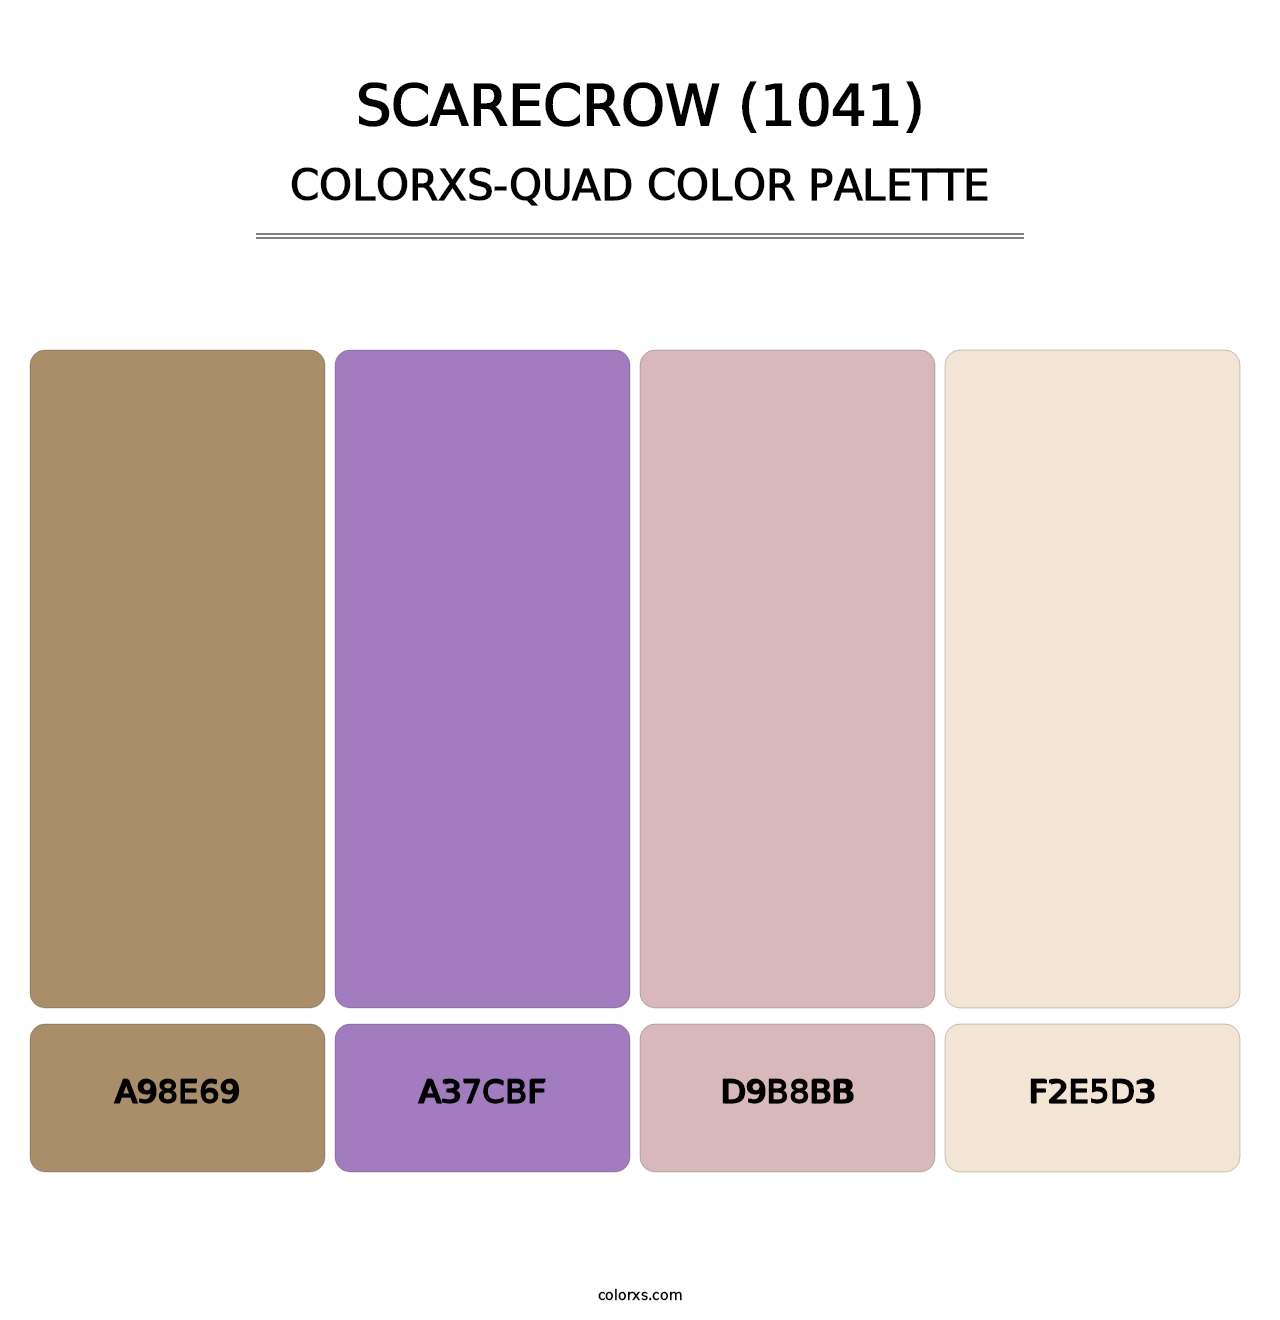 Scarecrow (1041) - Colorxs Quad Palette